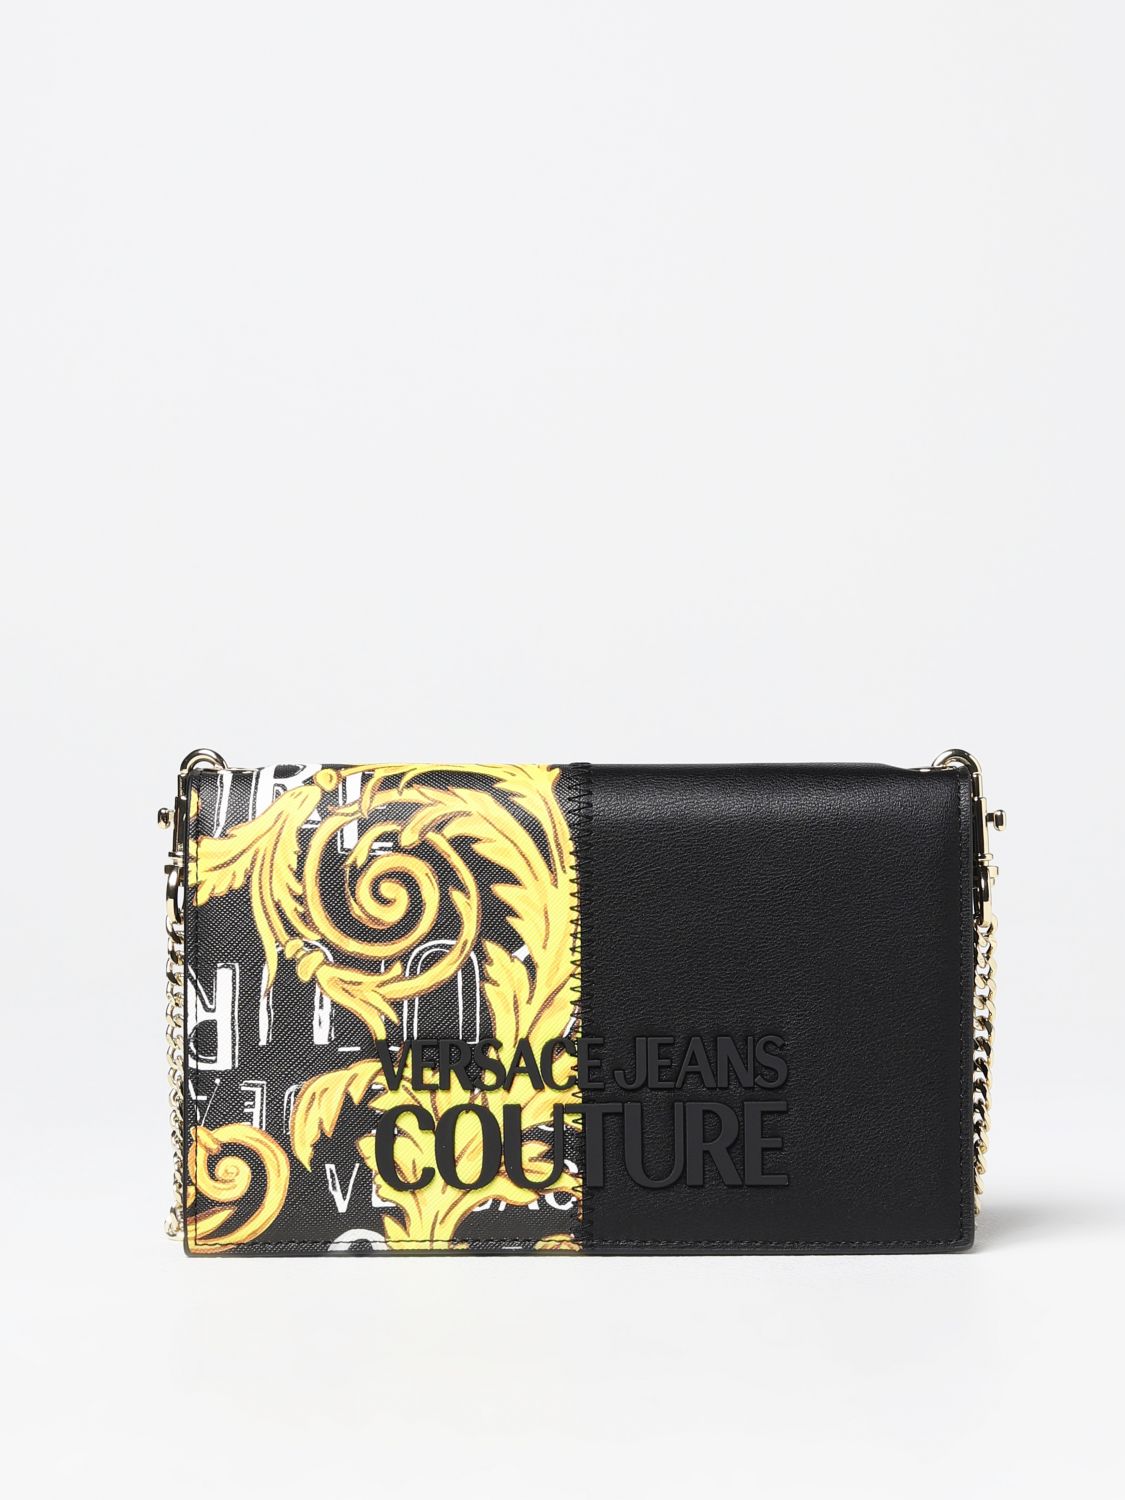 Versace Jeans Couture Wallet  Woman Color Black